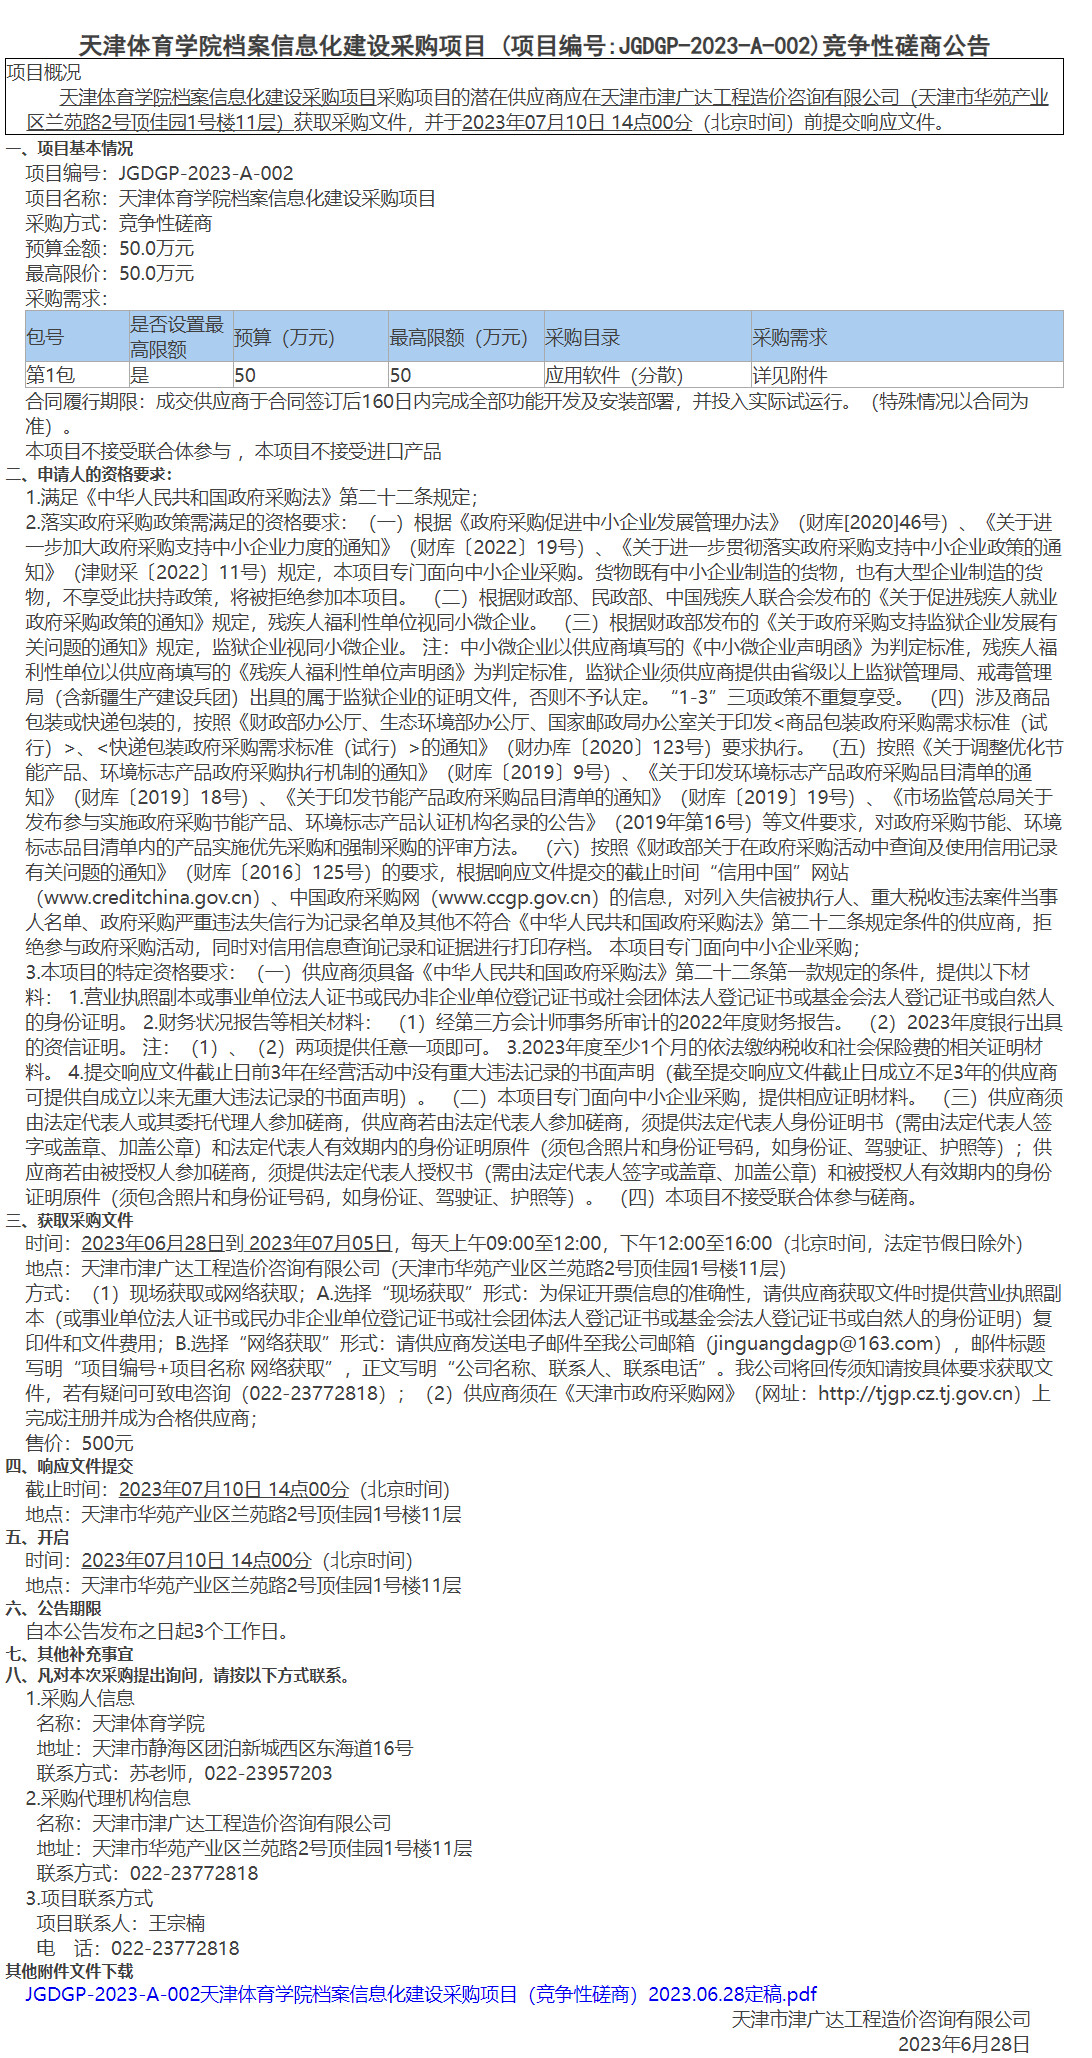 天津体育学院档案信息化建设采购项目(图1)